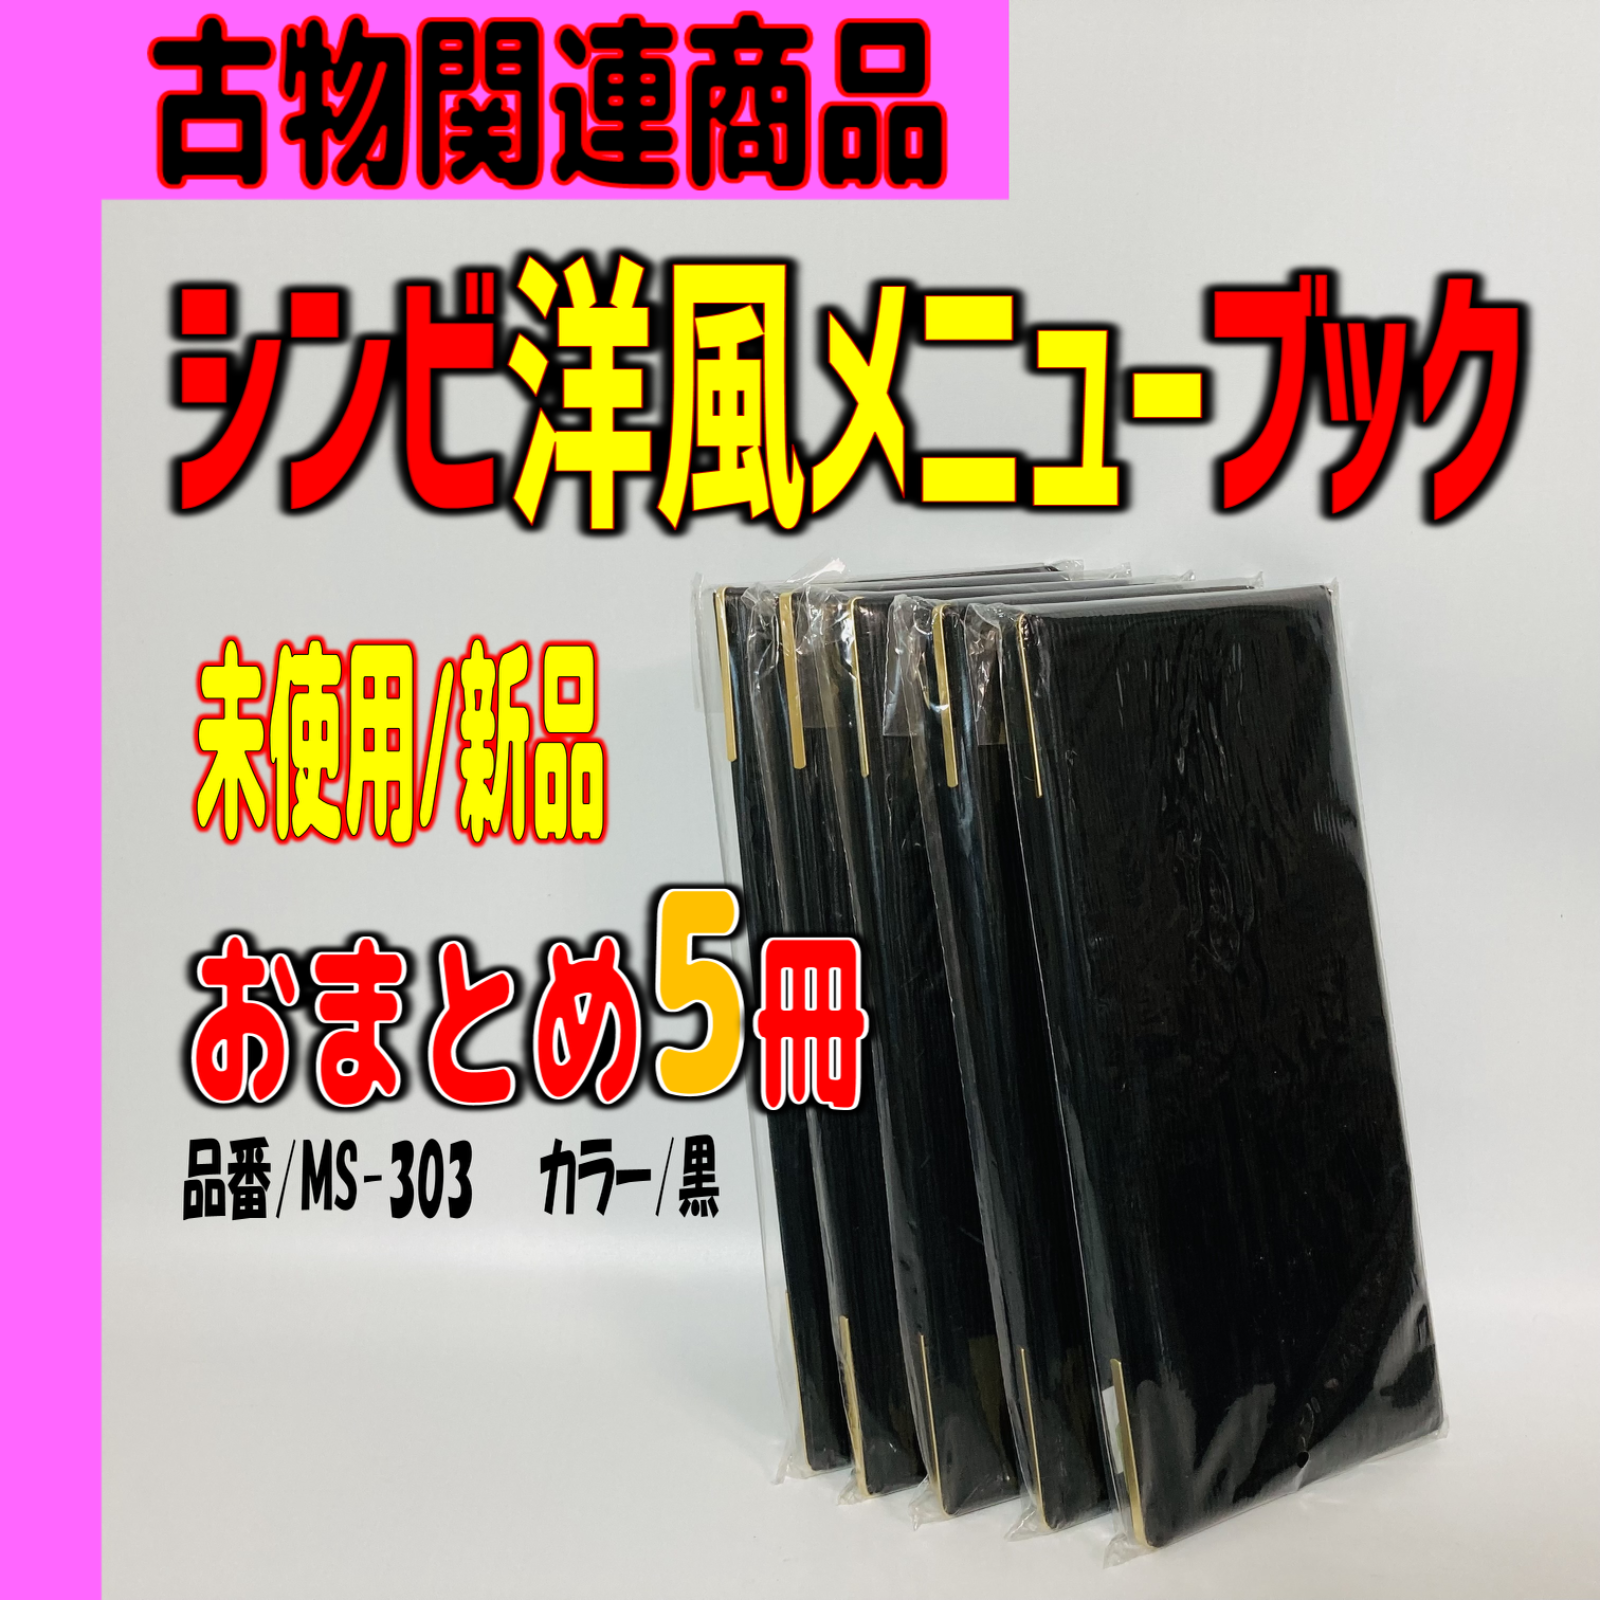 人気商品 シンビ メニューブック MS-303 黒 3102150